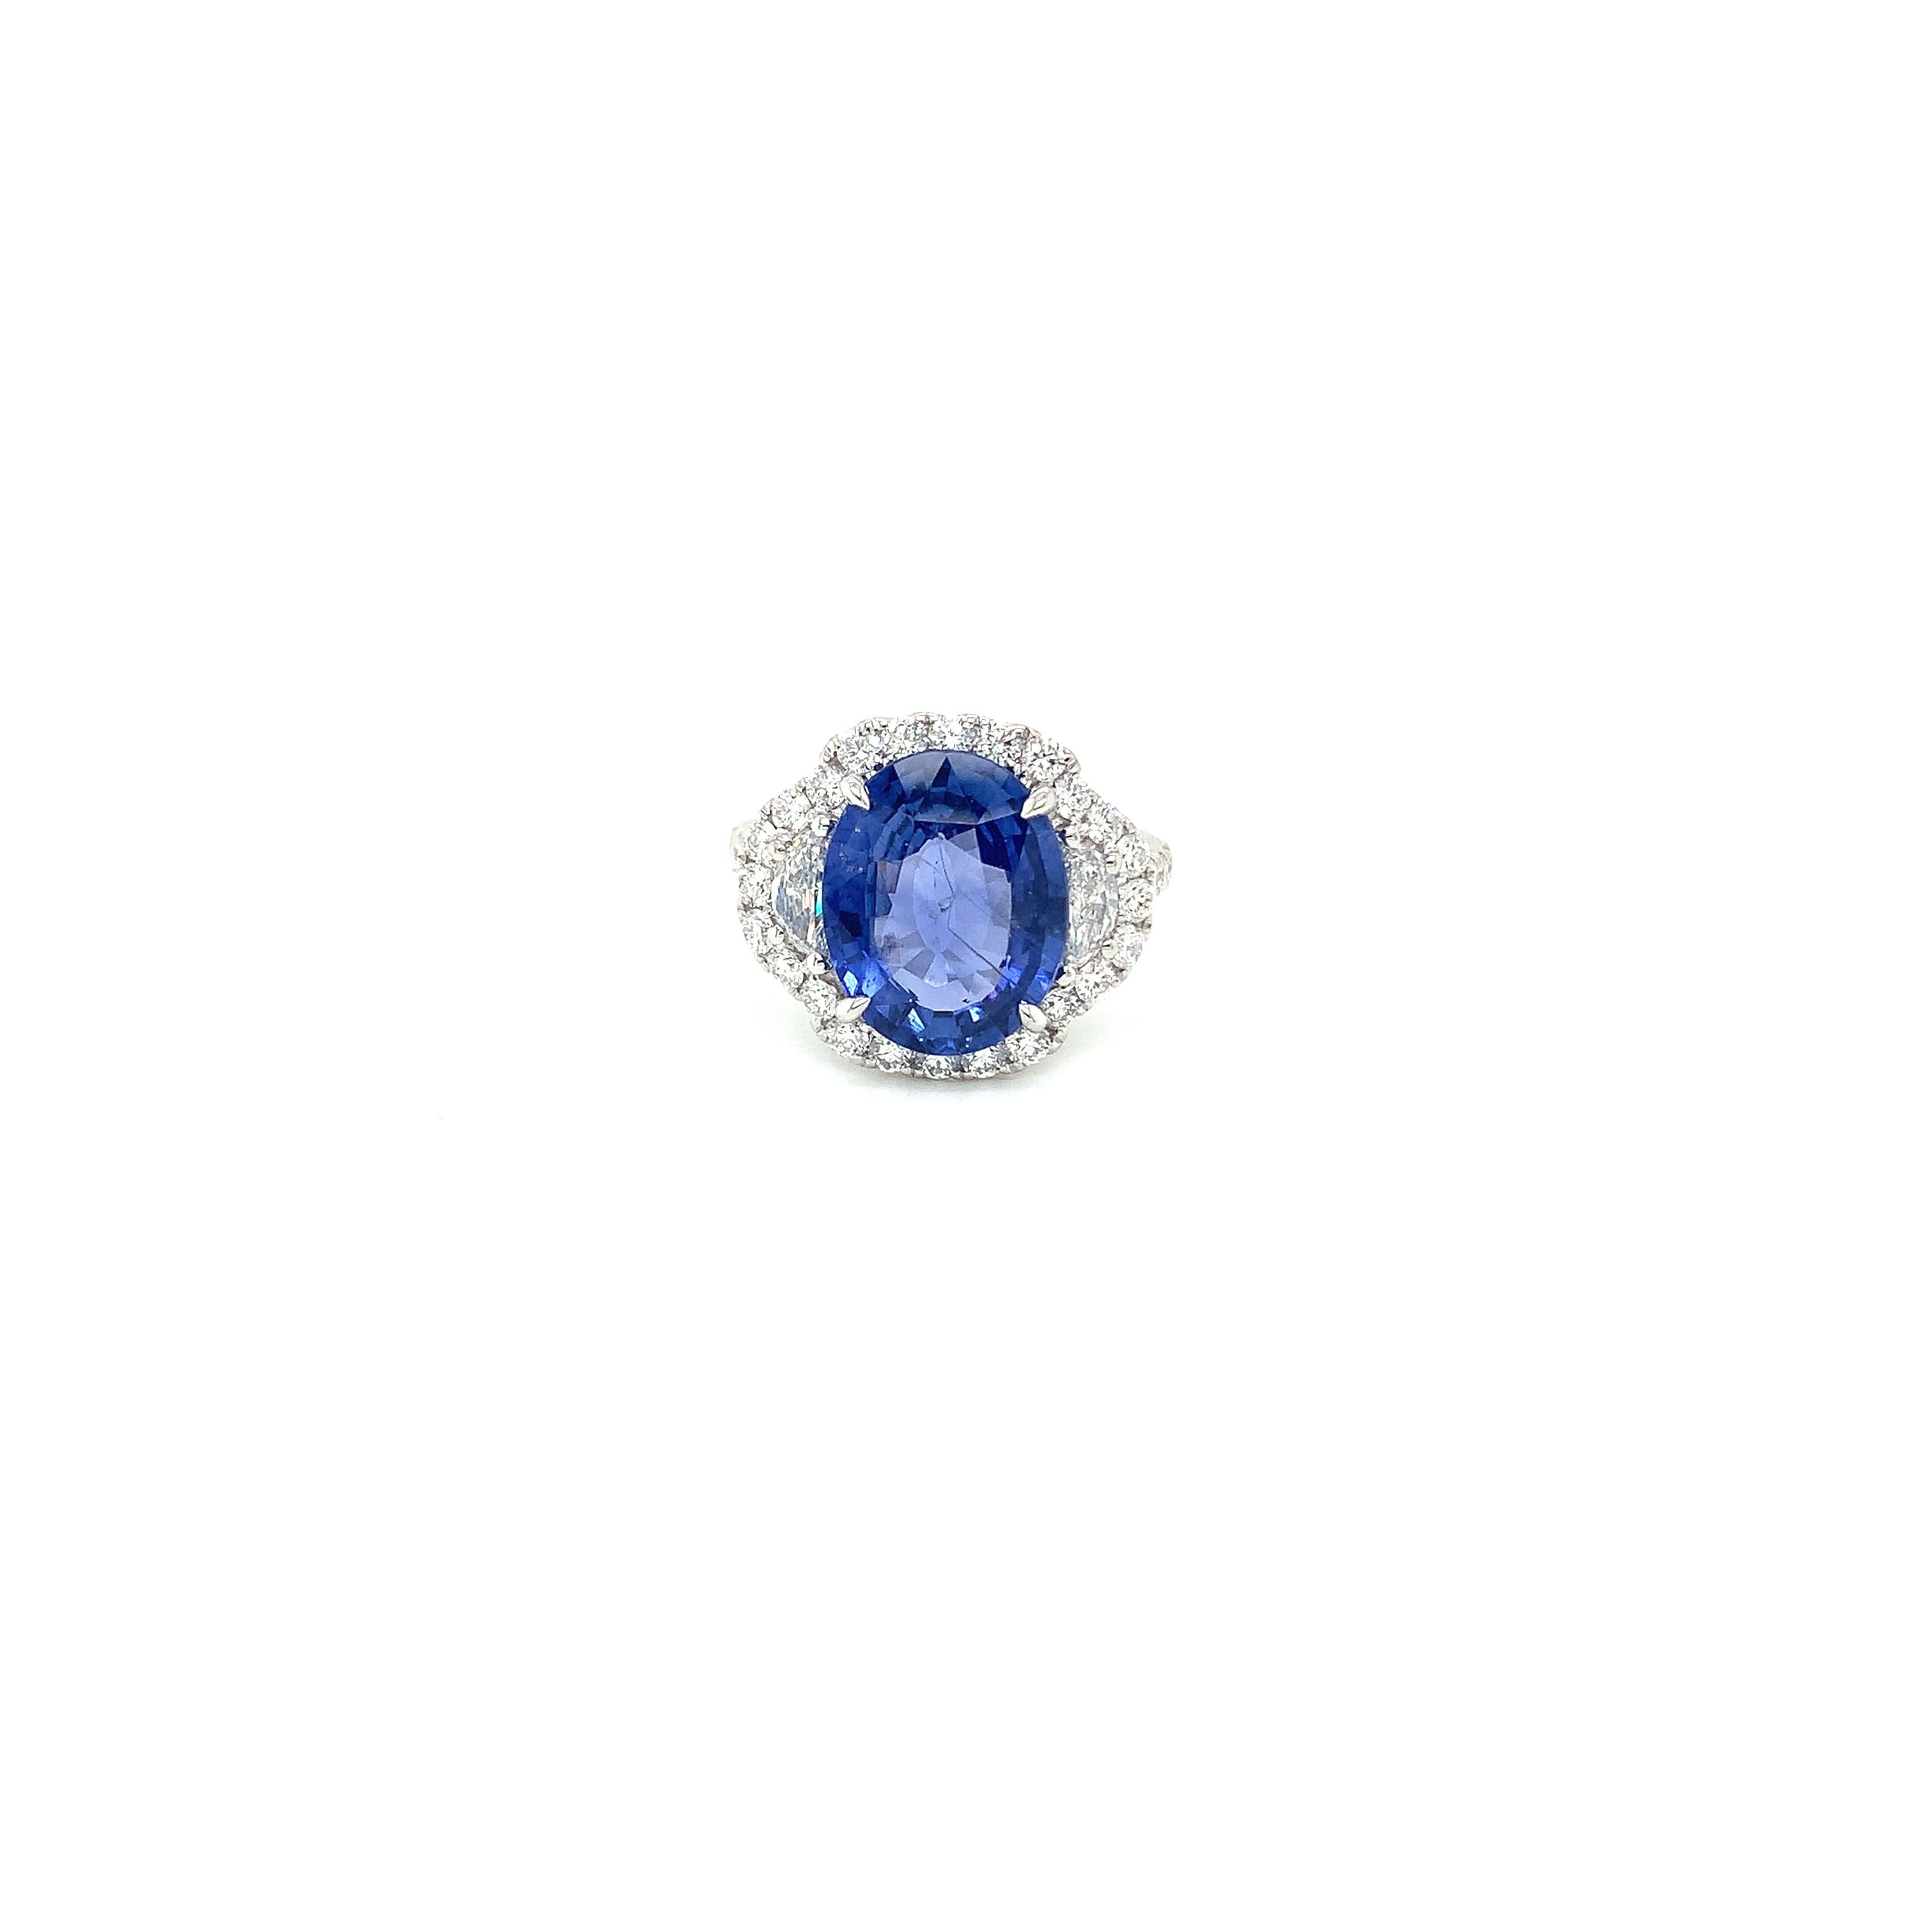 Ovaler blauer Saphir mit einem Gewicht von 5,86 Karat
Messung (12,7x10,3) mm
Halbmond-Diamanten mit einem Gewicht von 0,39 Karat
34 runde Diamanten mit einem Gewicht von 0,83 Karat
Ring aus 18 Karat Weißgold
5.08 Gramm